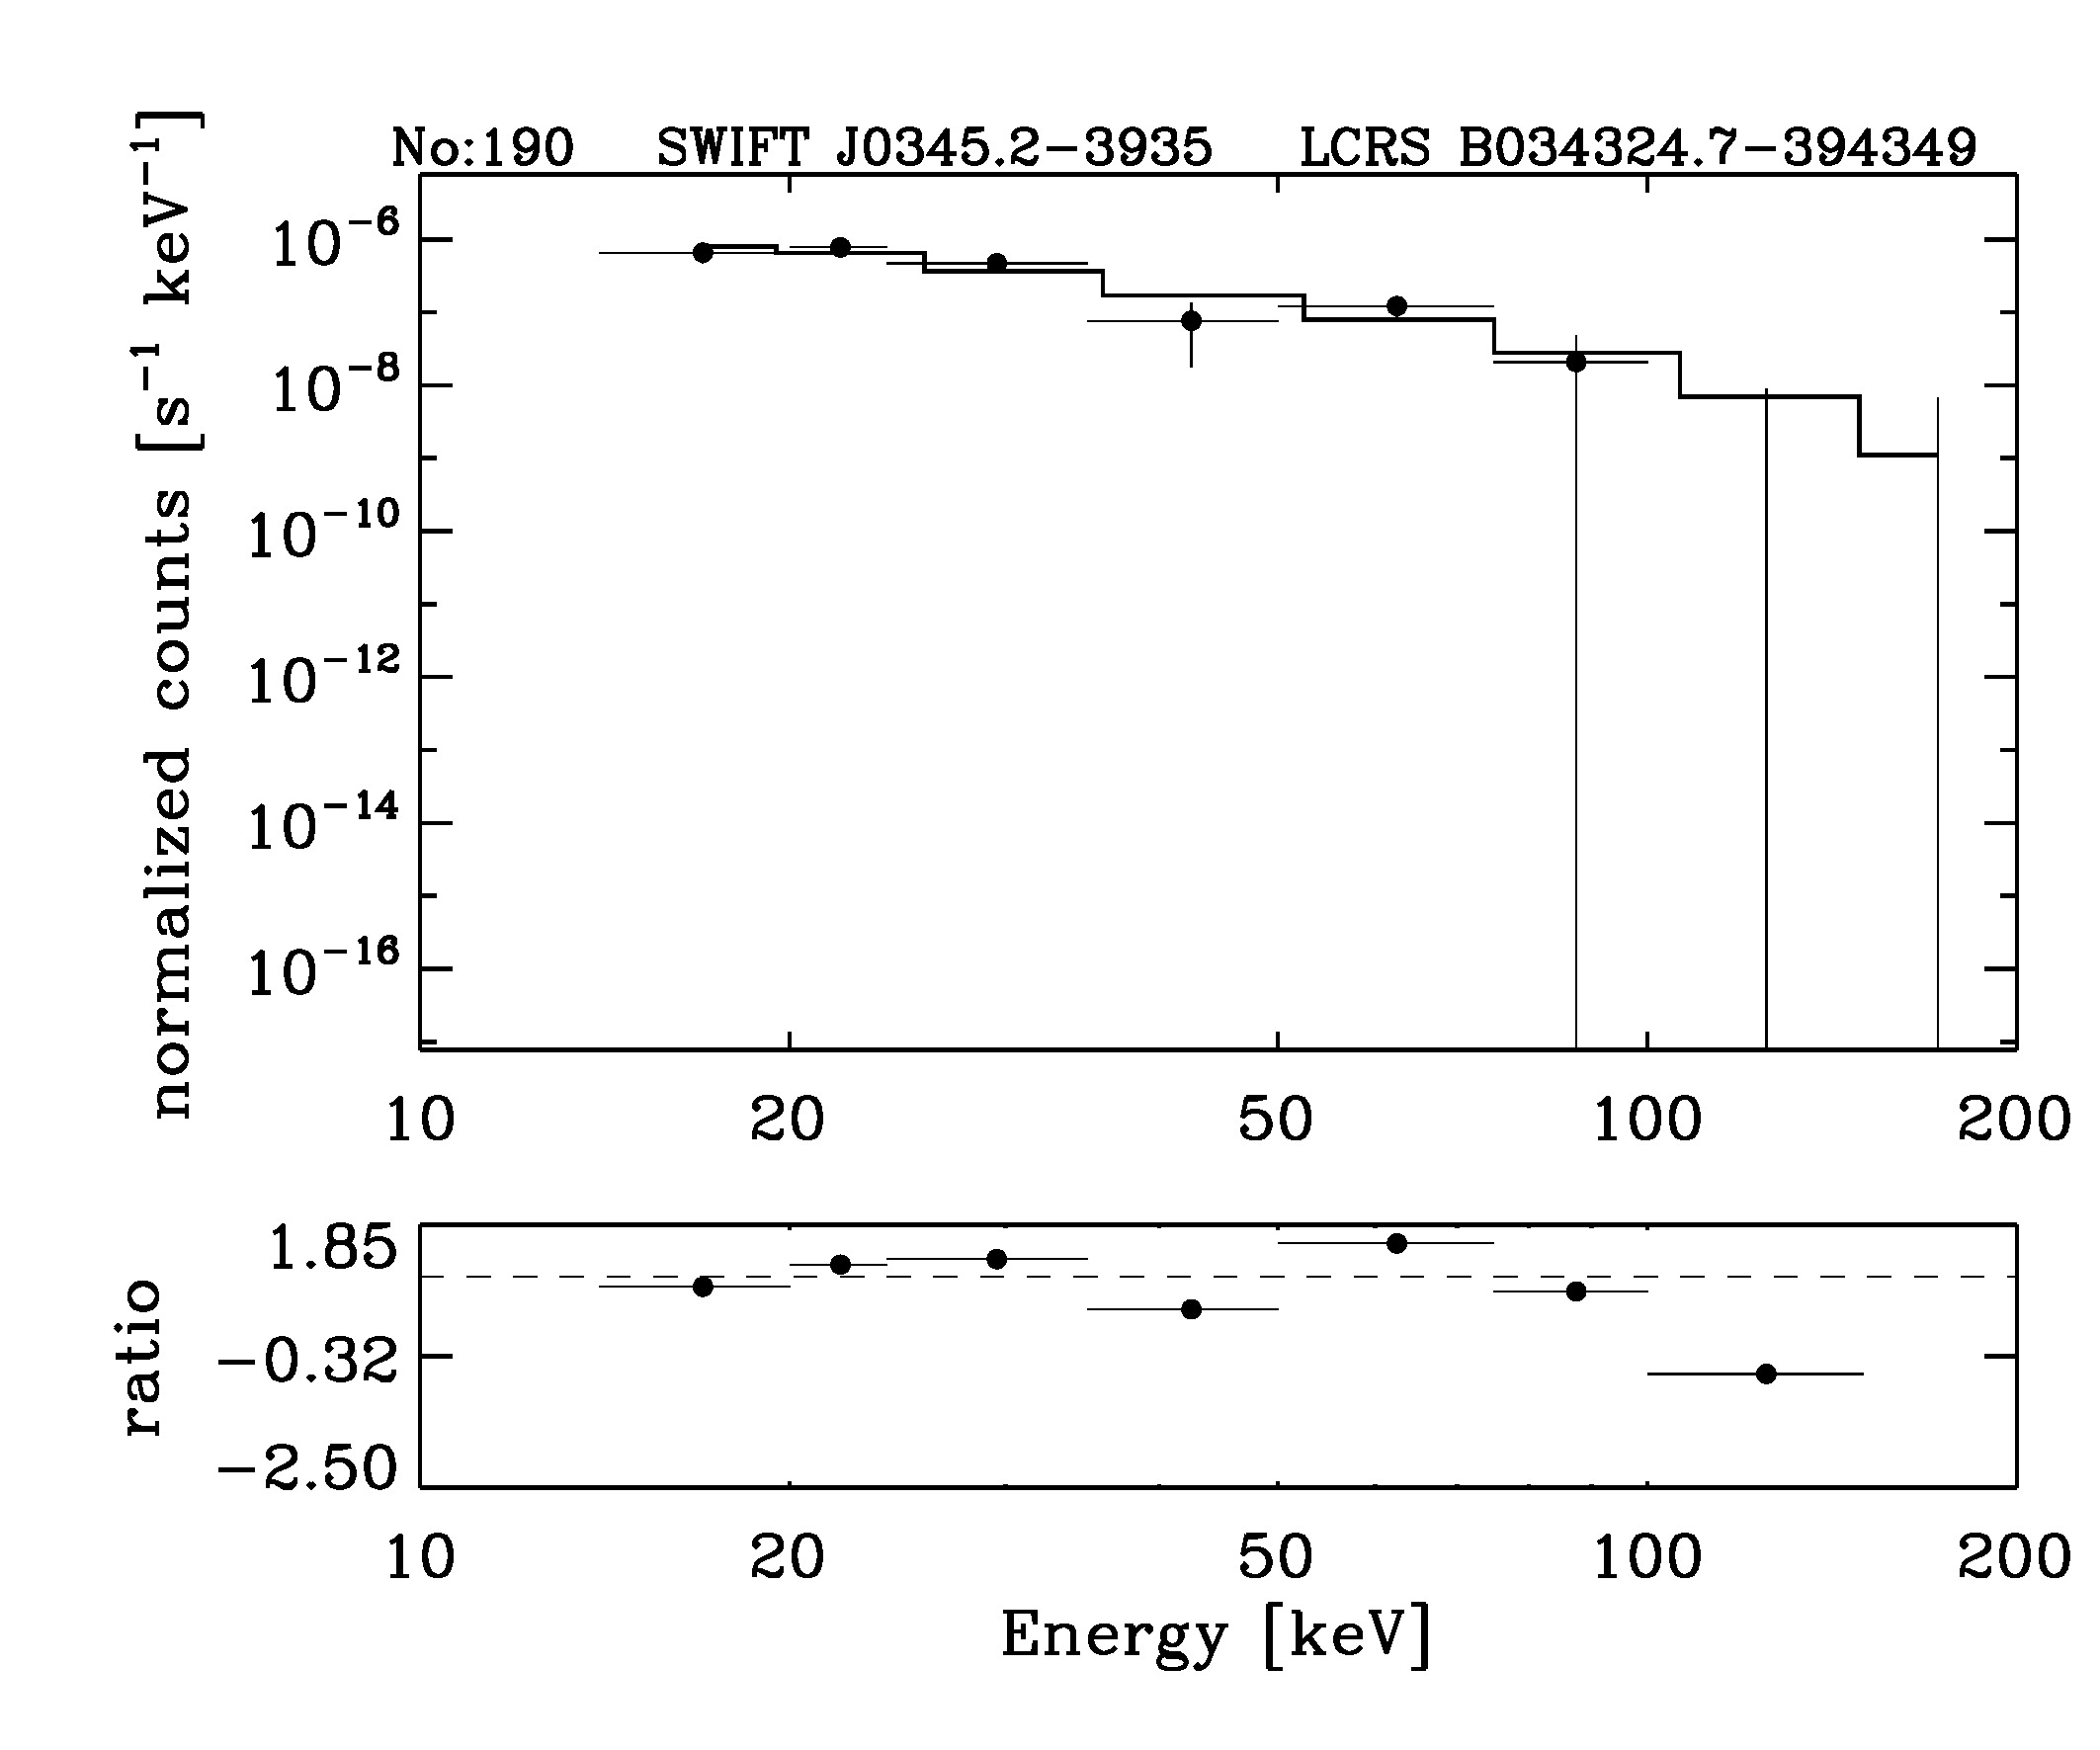 BAT Spectrum for SWIFT J0345.2-3935